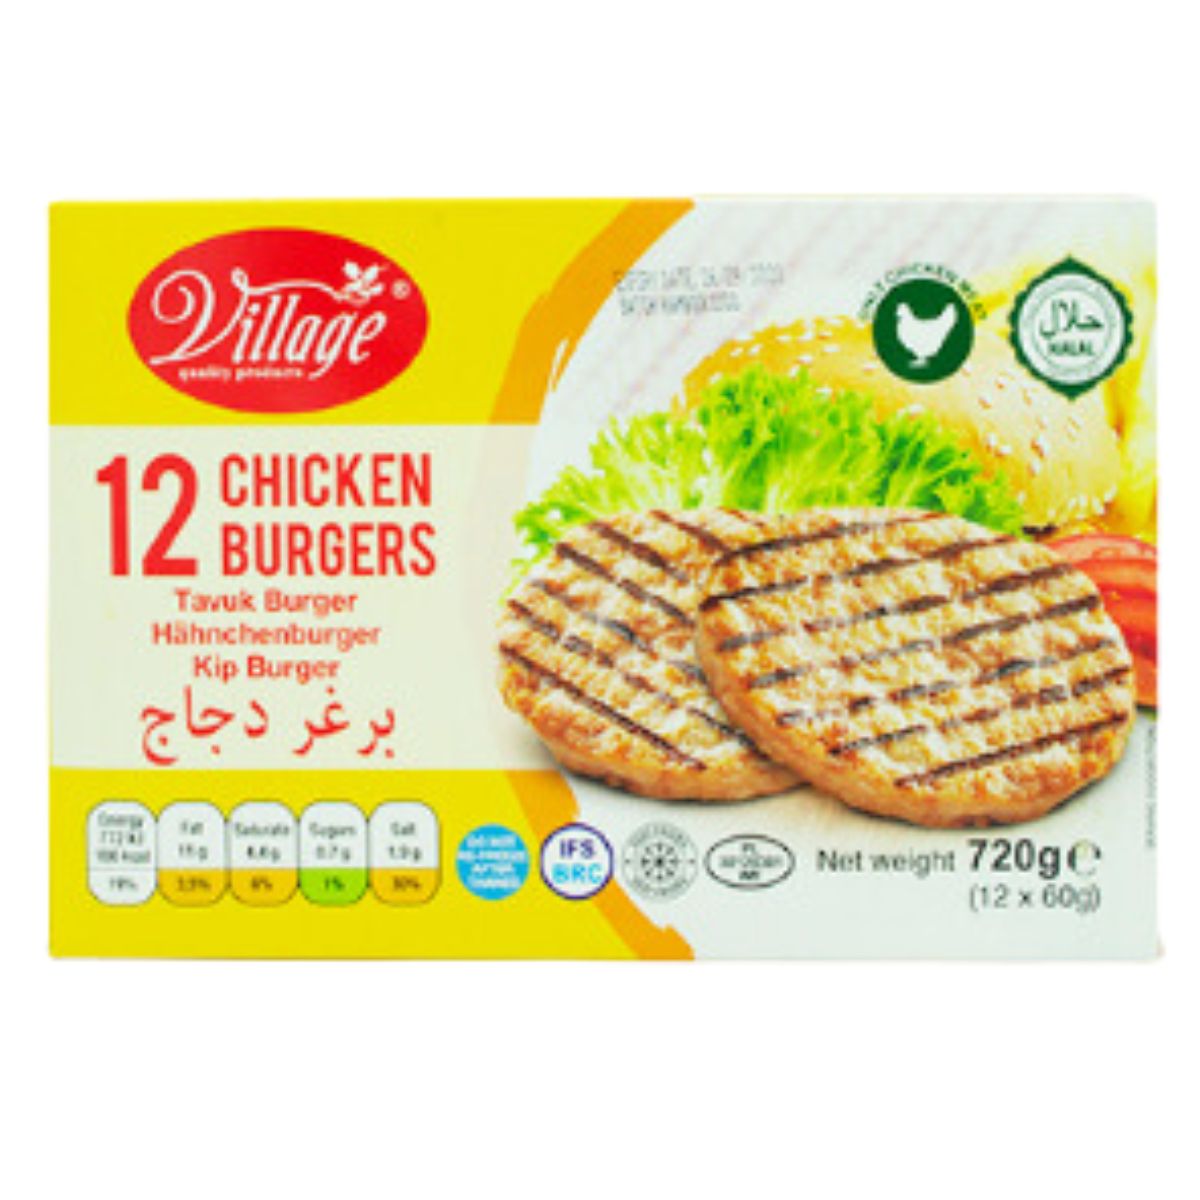 Village - 12 Chicken Burgers - 720g in a box.